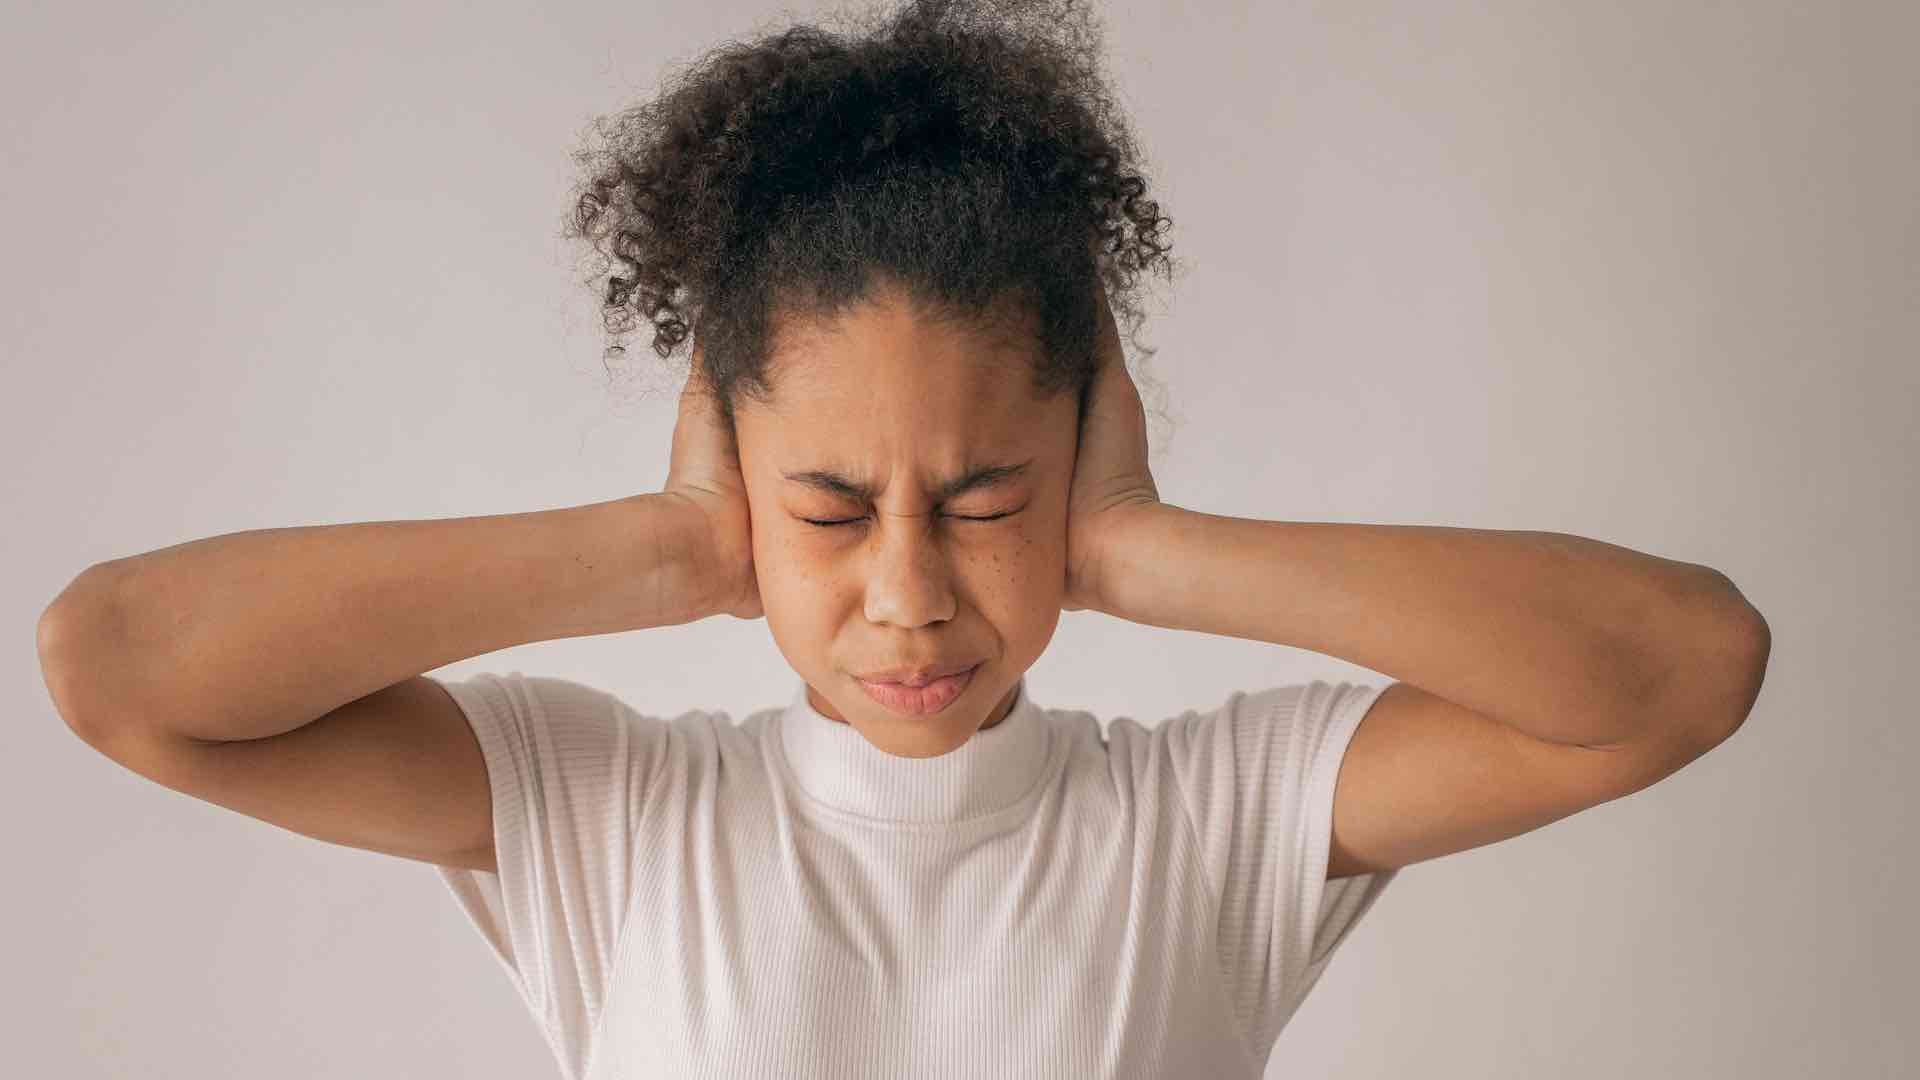 Los jóvenes corren el riesgo de sufrir daños auditivos.